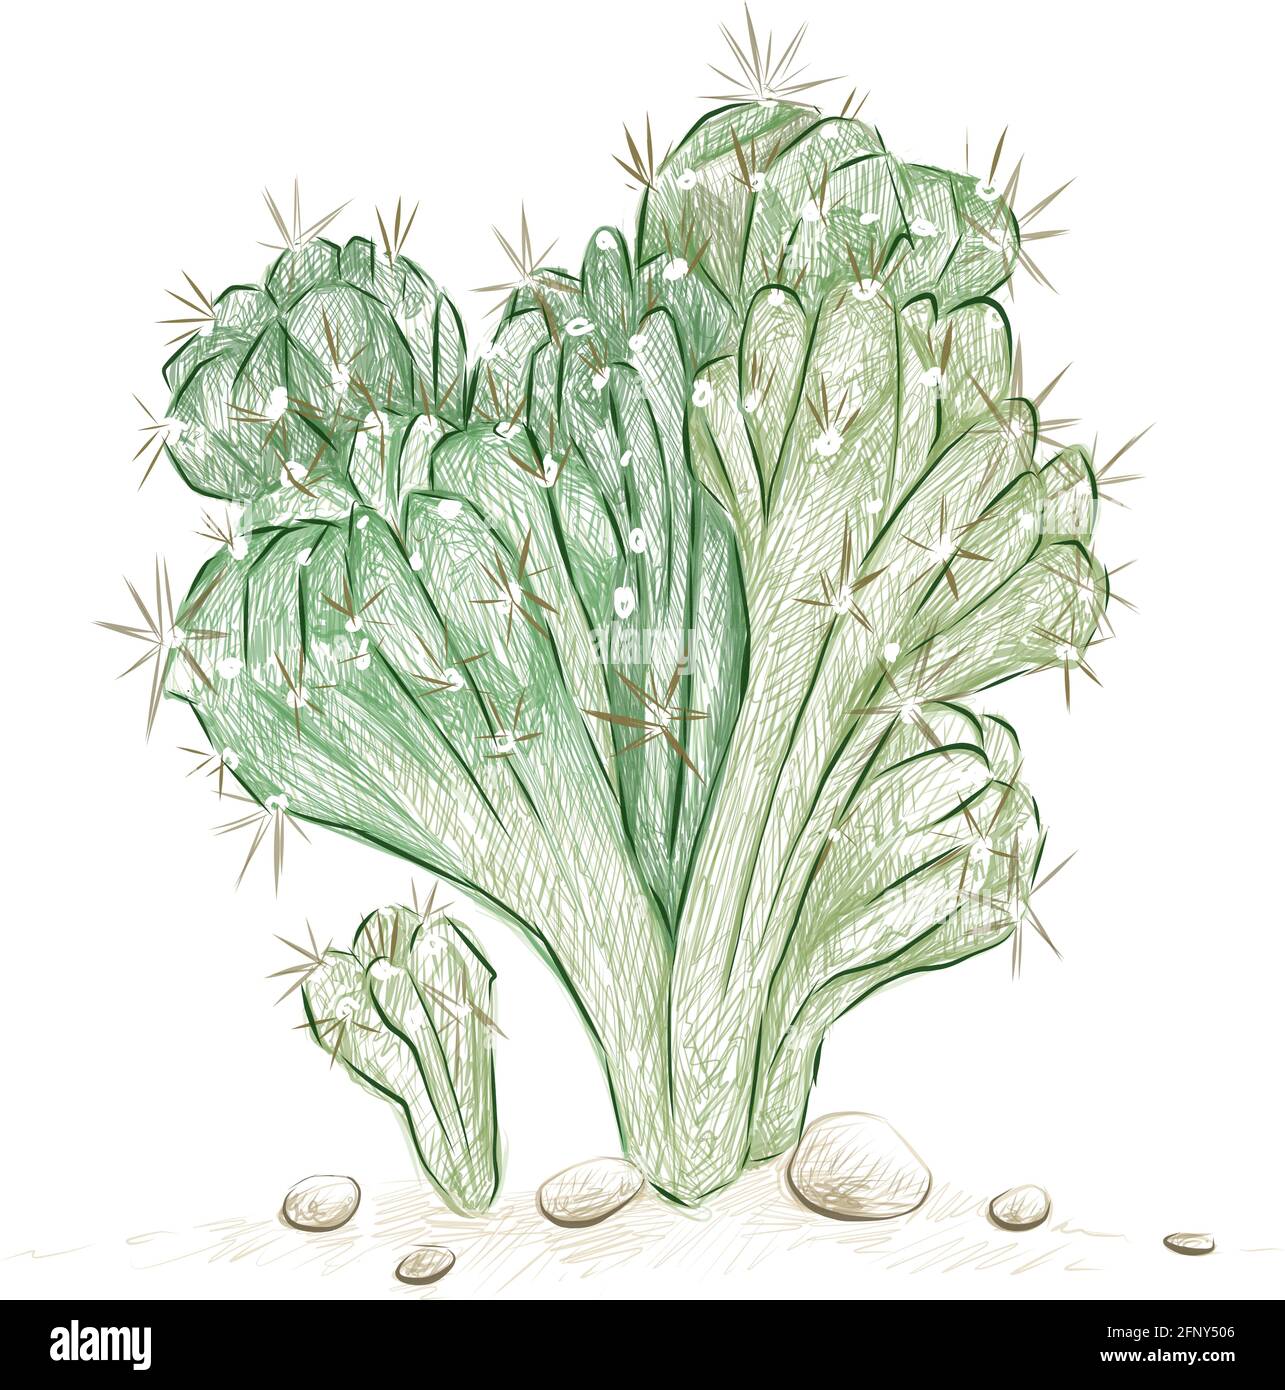 Illustrazione schizzo disegnato a mano di Cereus Forbesii Monstrose o Ming Thing Cactus. Piante succulente con spine taglienti per la decorazione del giardino. Illustrazione Vettoriale